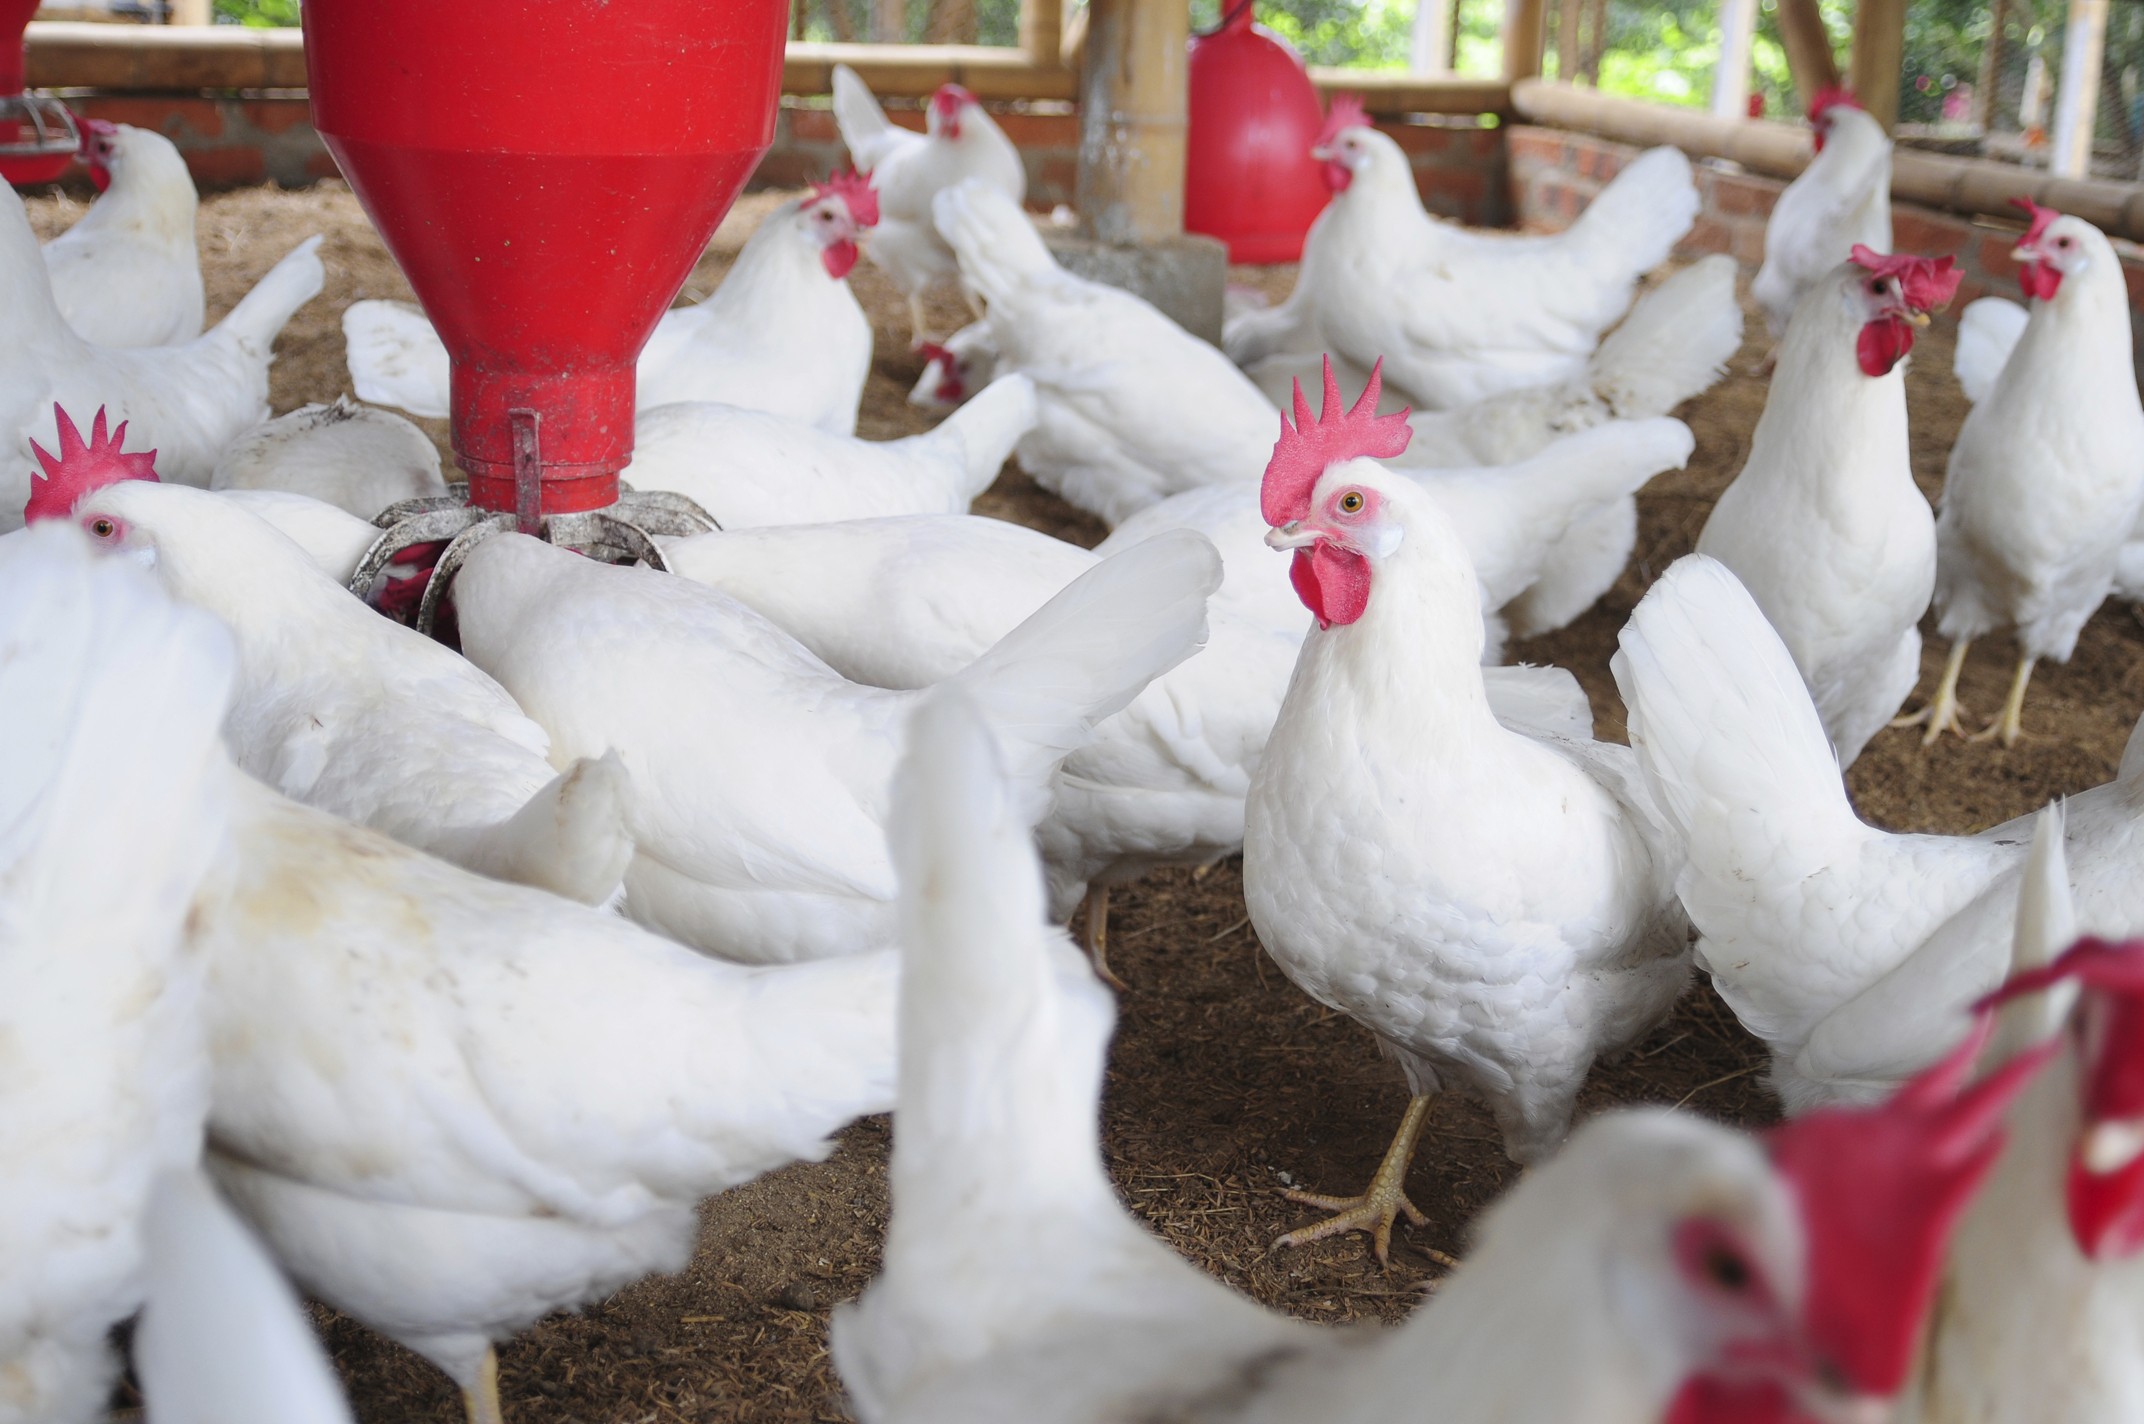 ۱۲ تن مرغ گوشتی زنده قاچاق در زنجان کشف شده است